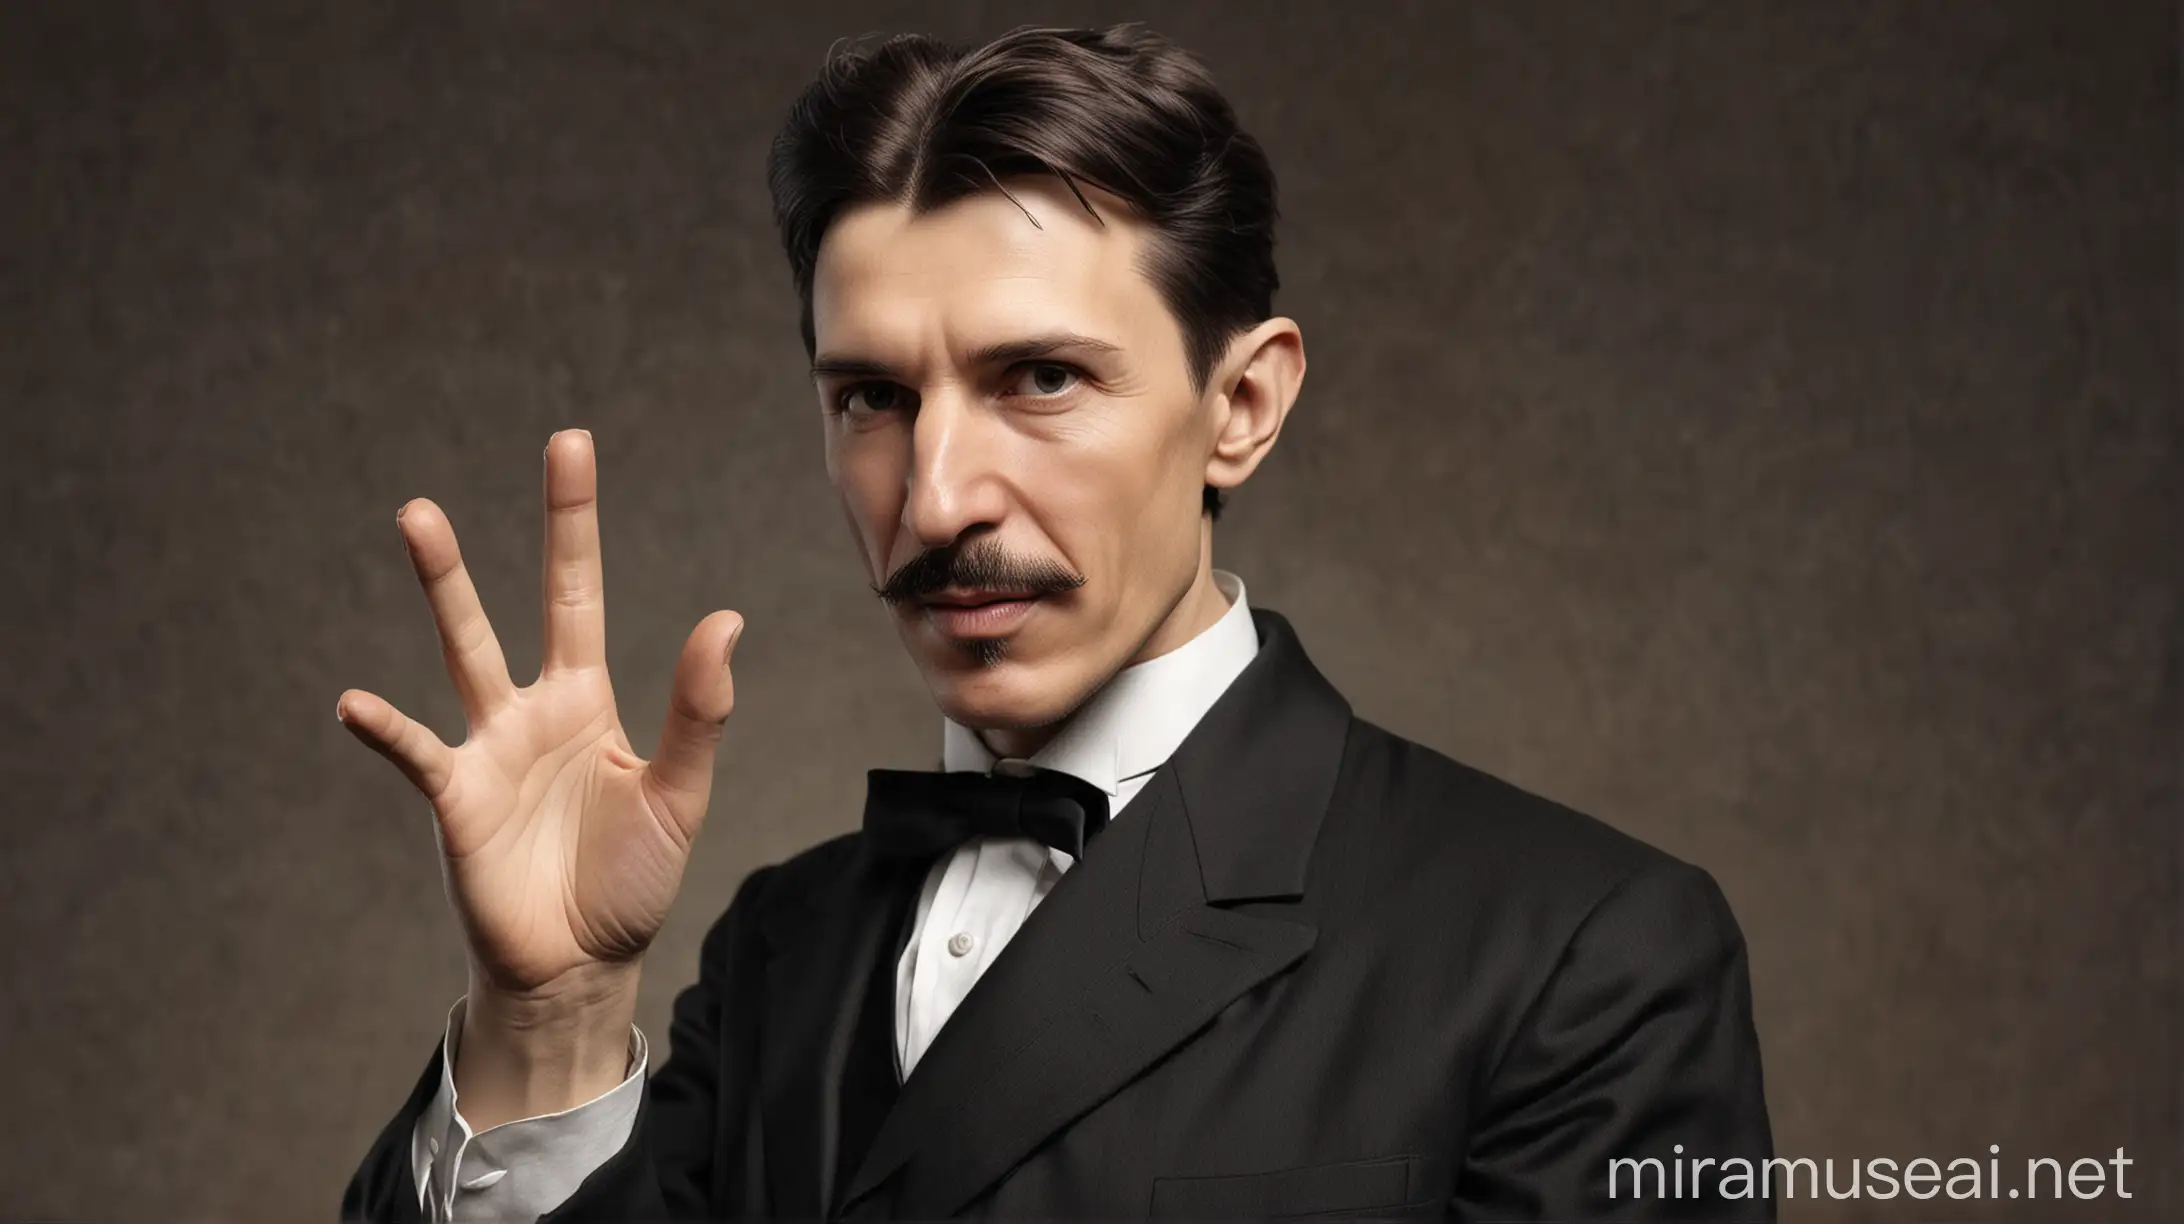 Nikola Tesla in a Dynamic Gesture while Speaking